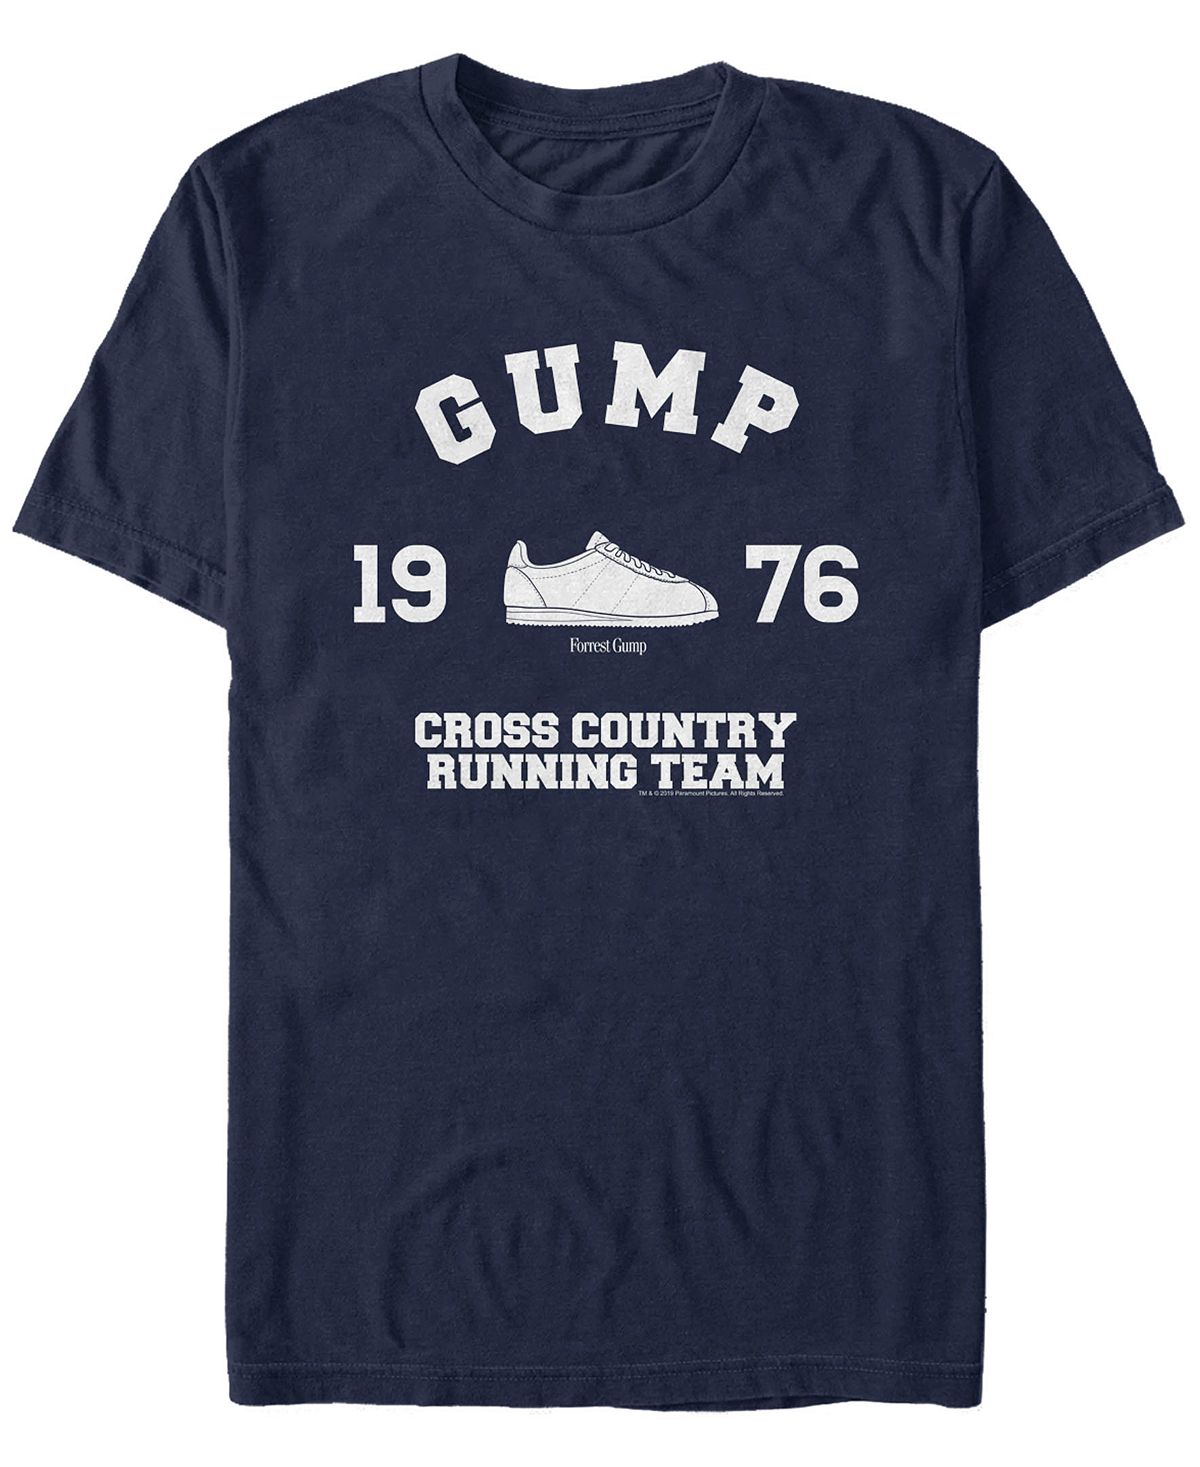 беги алиса ланской г Мужская футболка для бега по пересеченной местности с логотипом и короткими рукавами Fifth Sun, синий